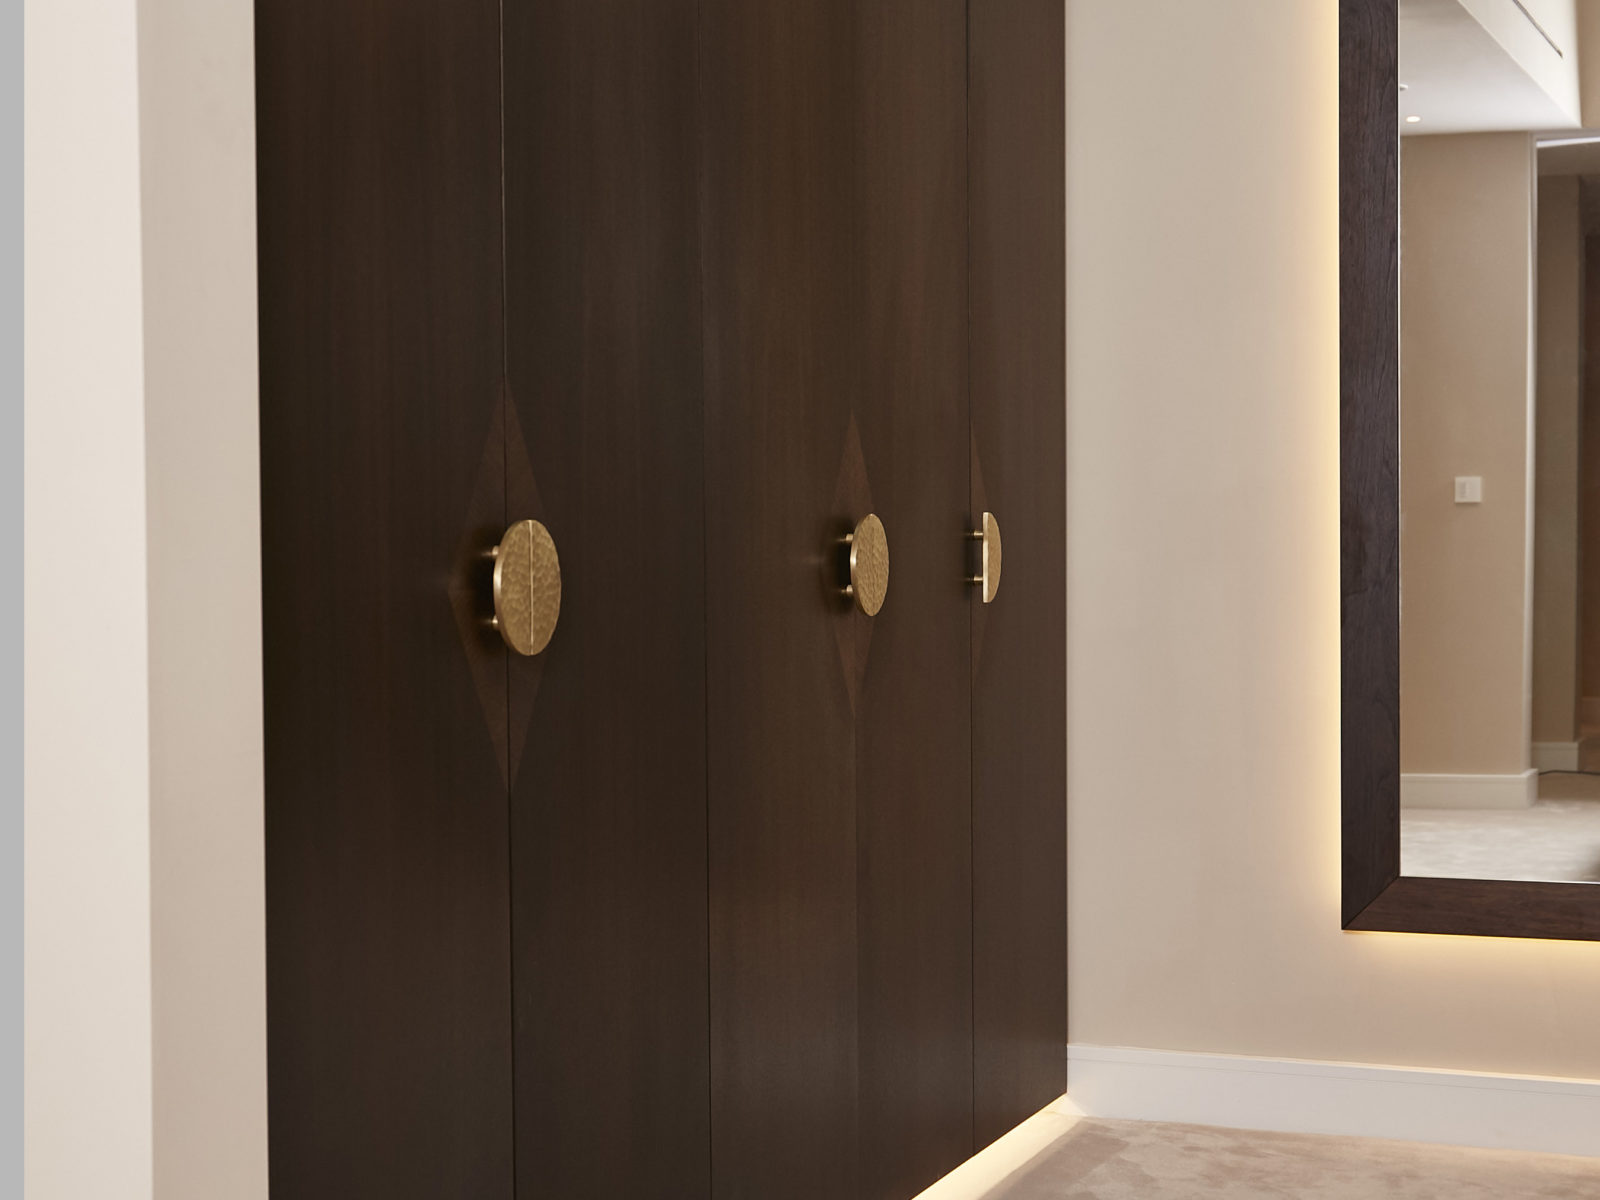 Fumed oak dressing room doors with bespoke handle